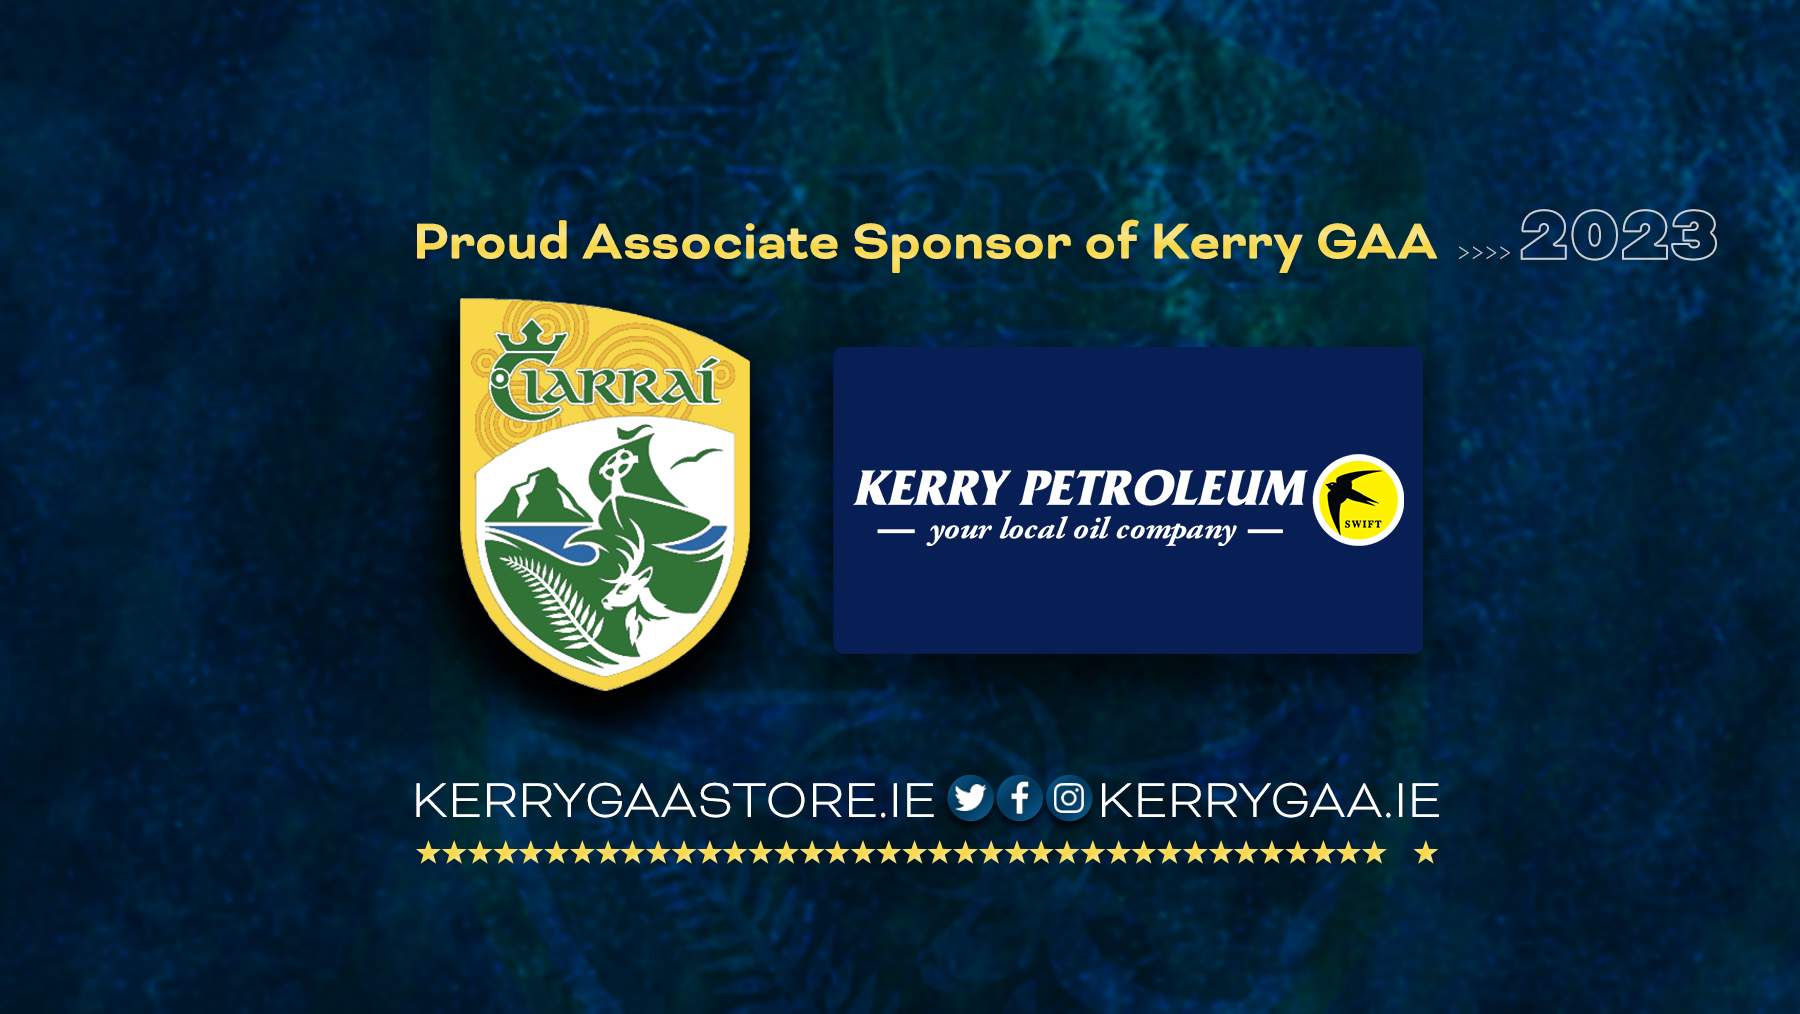 Kerry Petroleum Club Championship Finals